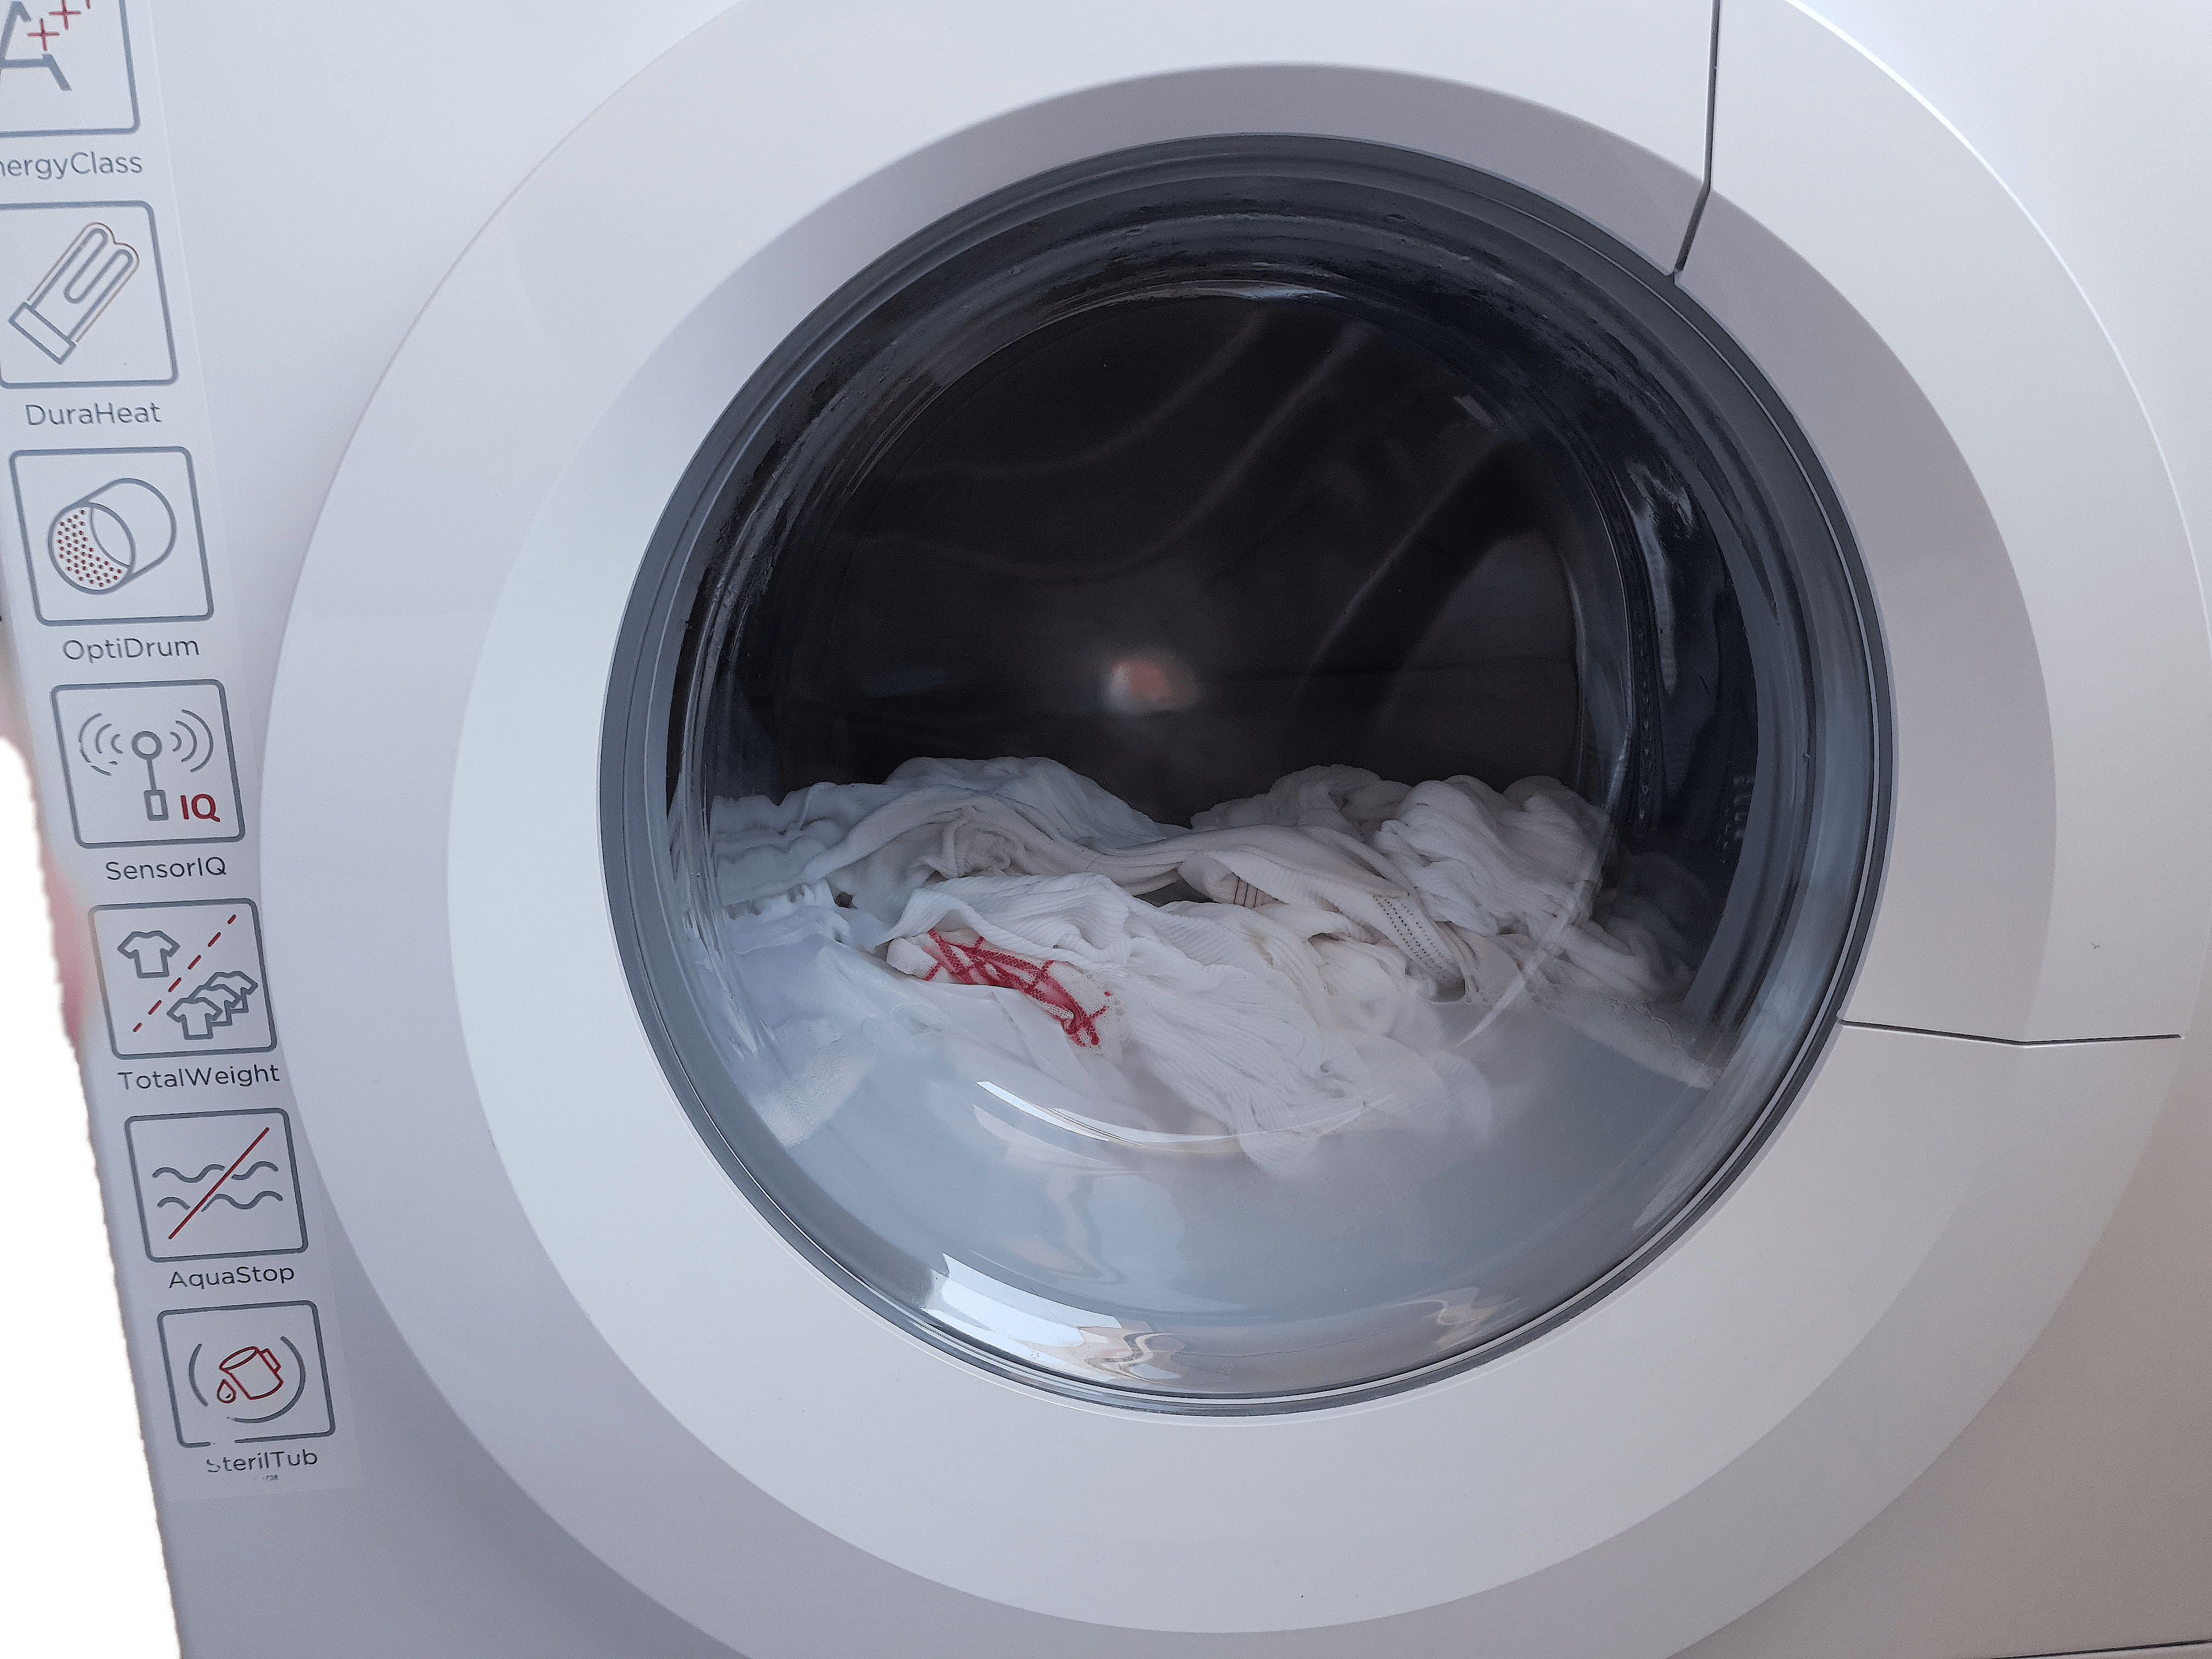 Die Wäsche in der Waschmaschine